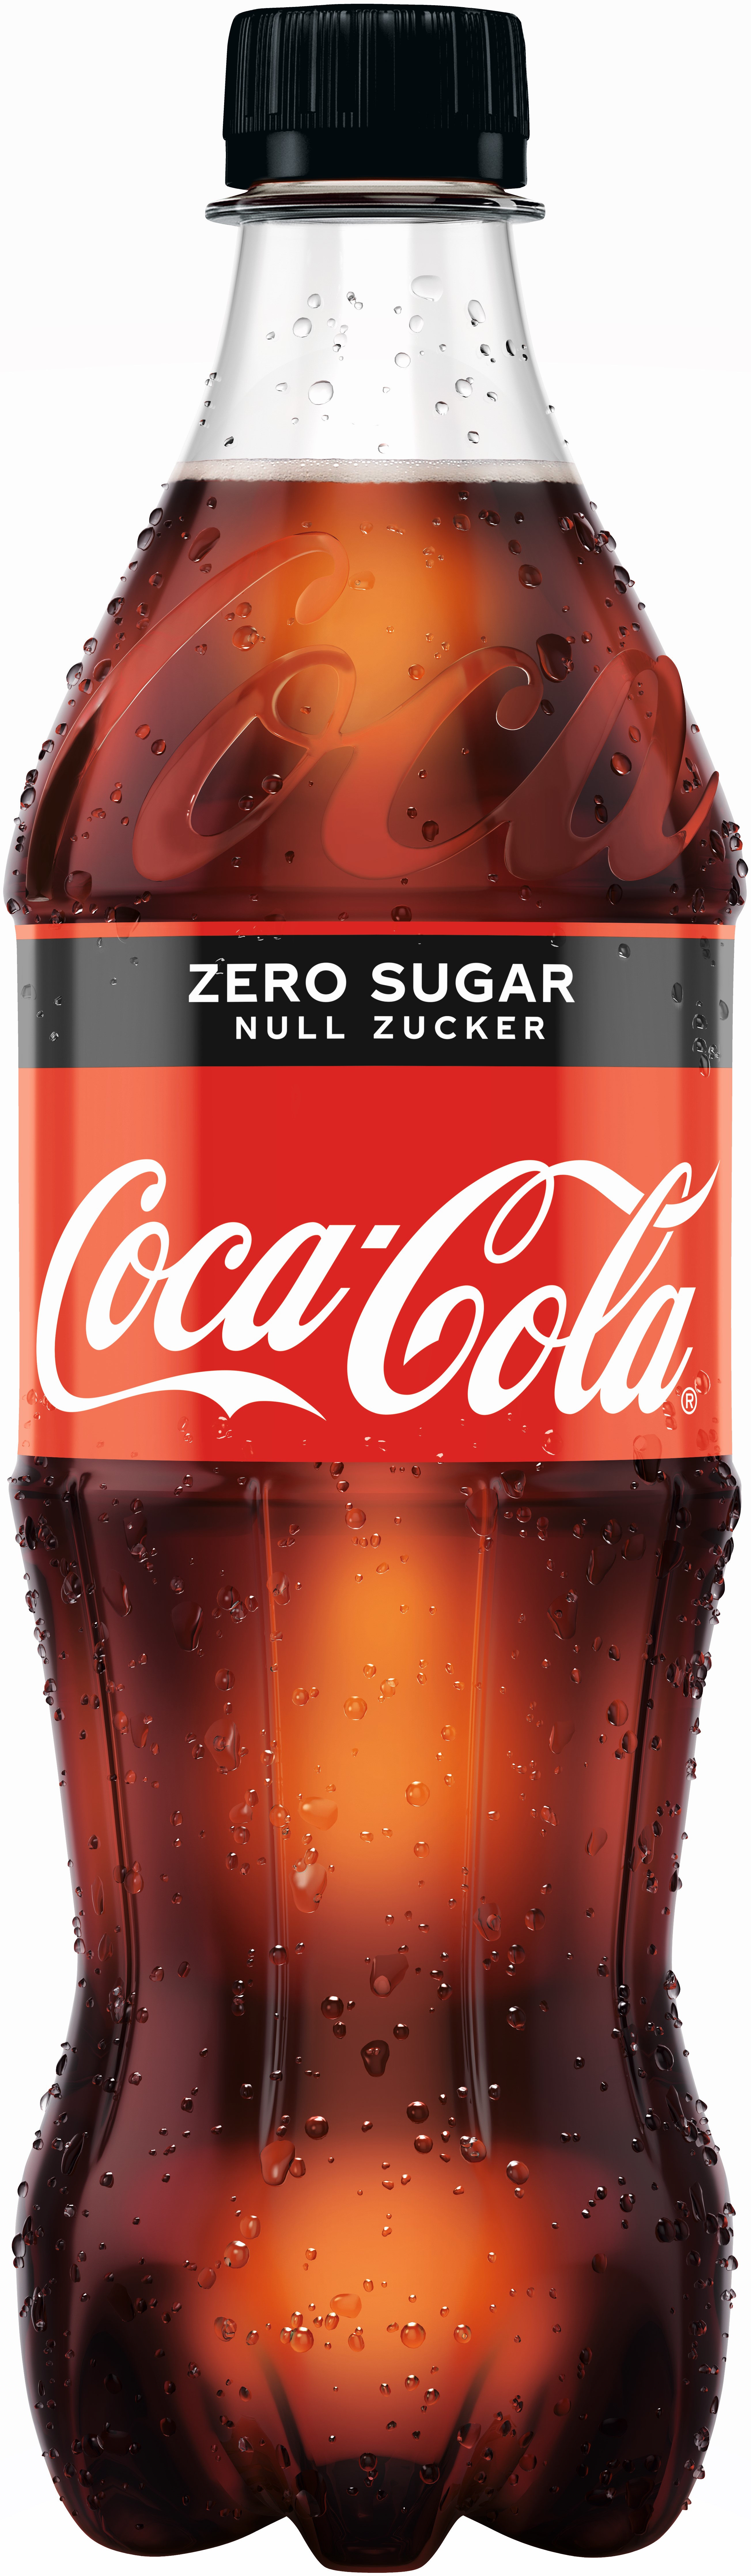 Afri Cola ohne Zucker 24 x 0,2l